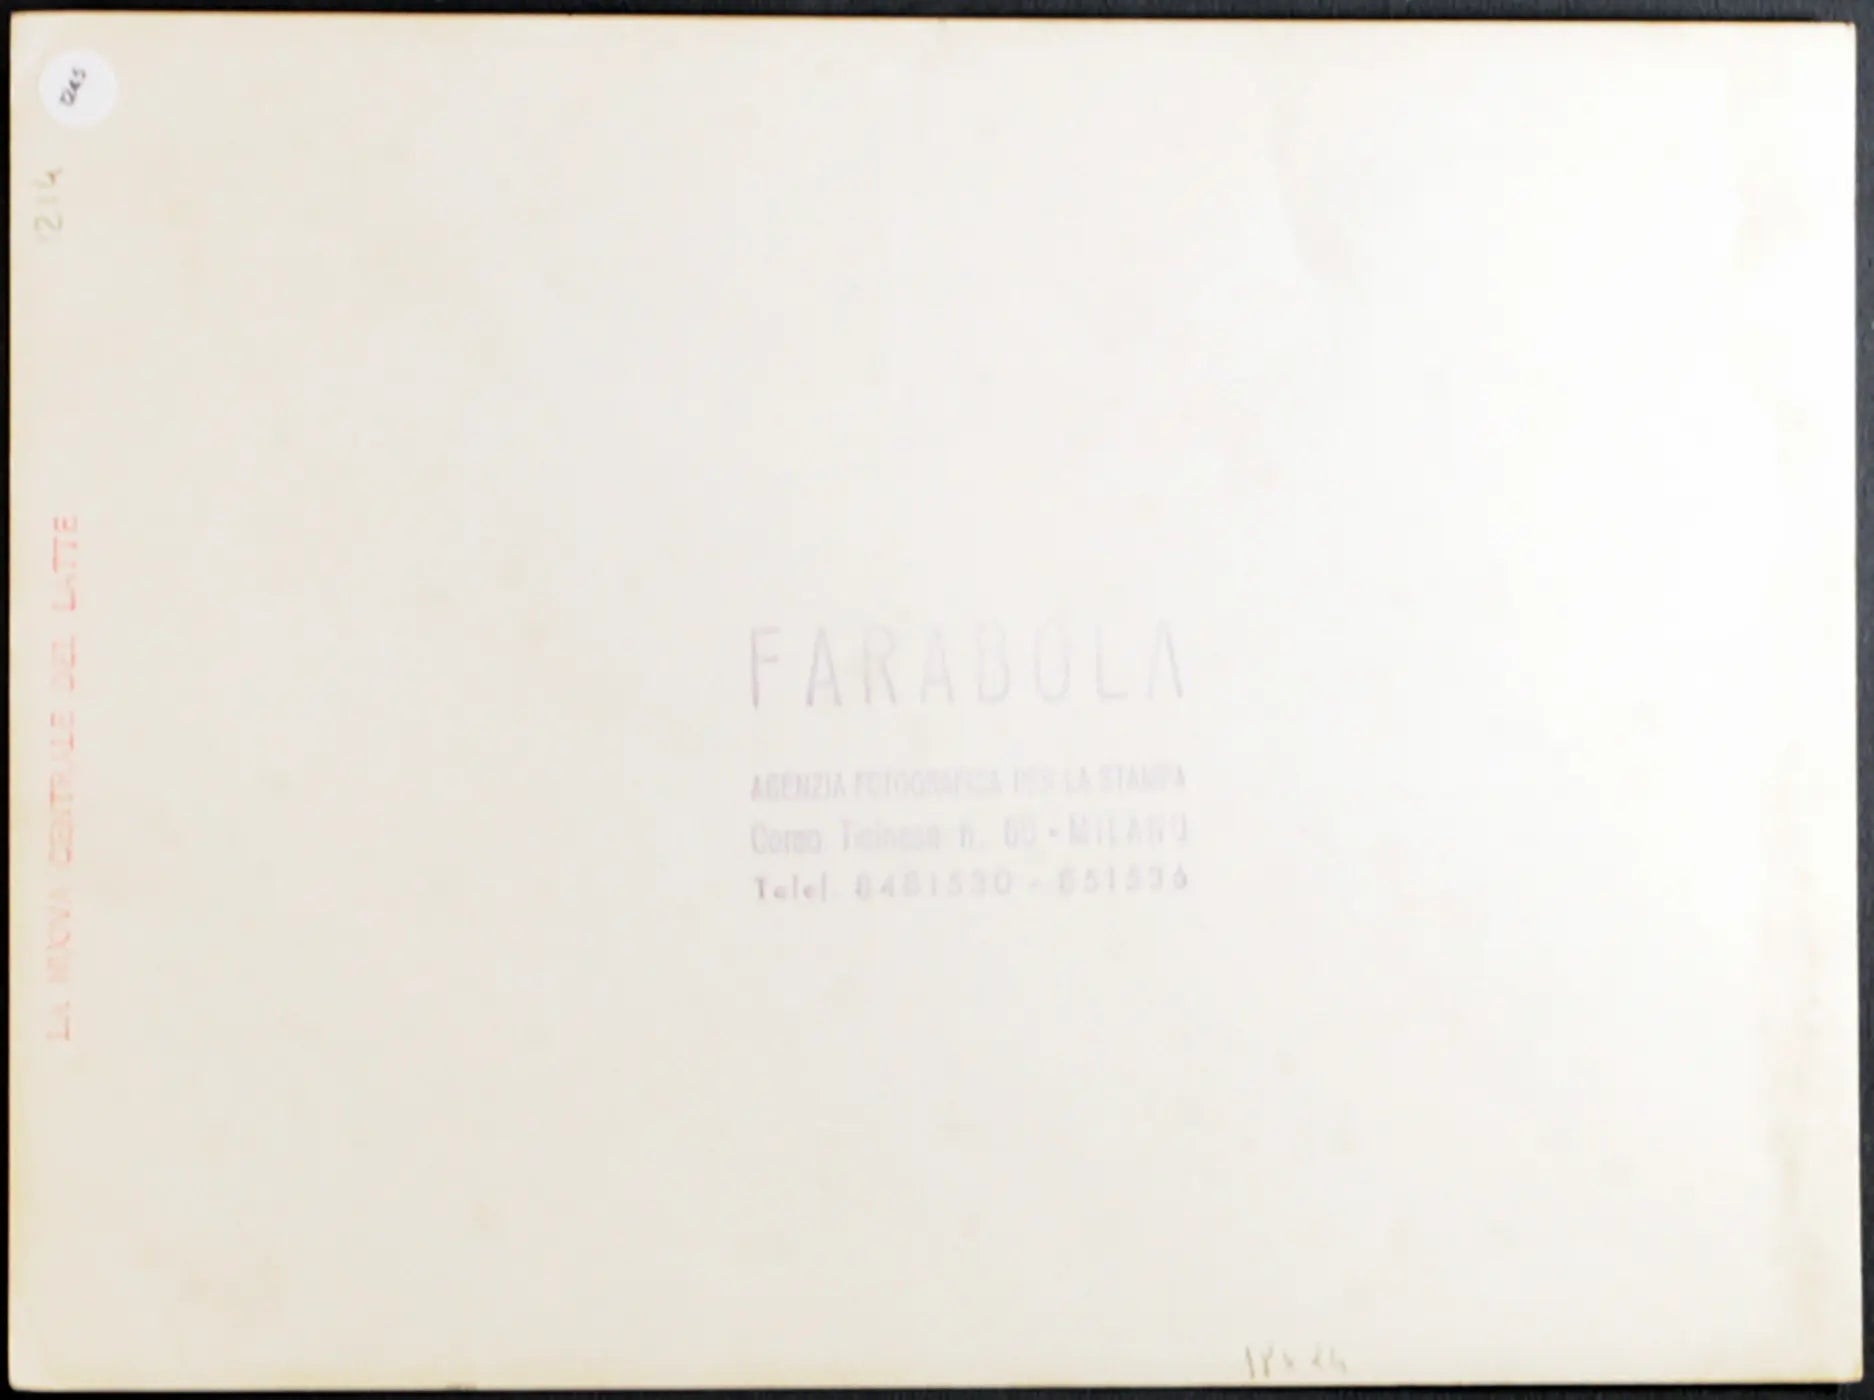 Nuova Centrale del Latte Milano Ft 1245 - Stampa 24x18 cm - Farabola Stampa ai sali d'argento